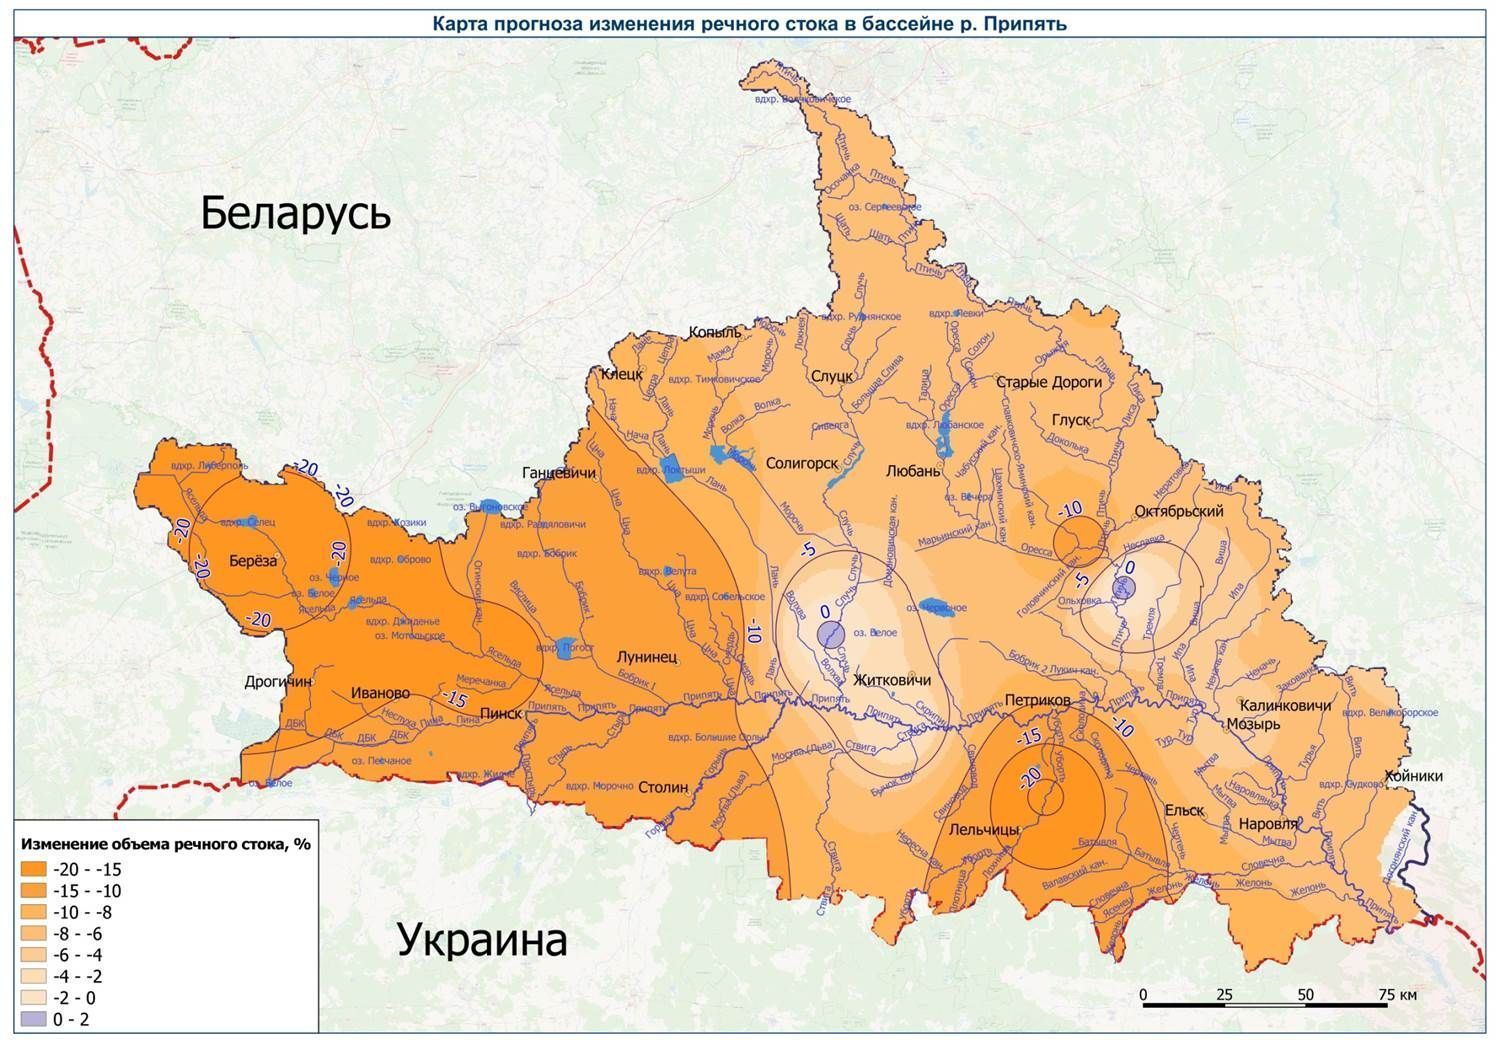 Карта прогноза изменения речного стока в бассейне Припяти